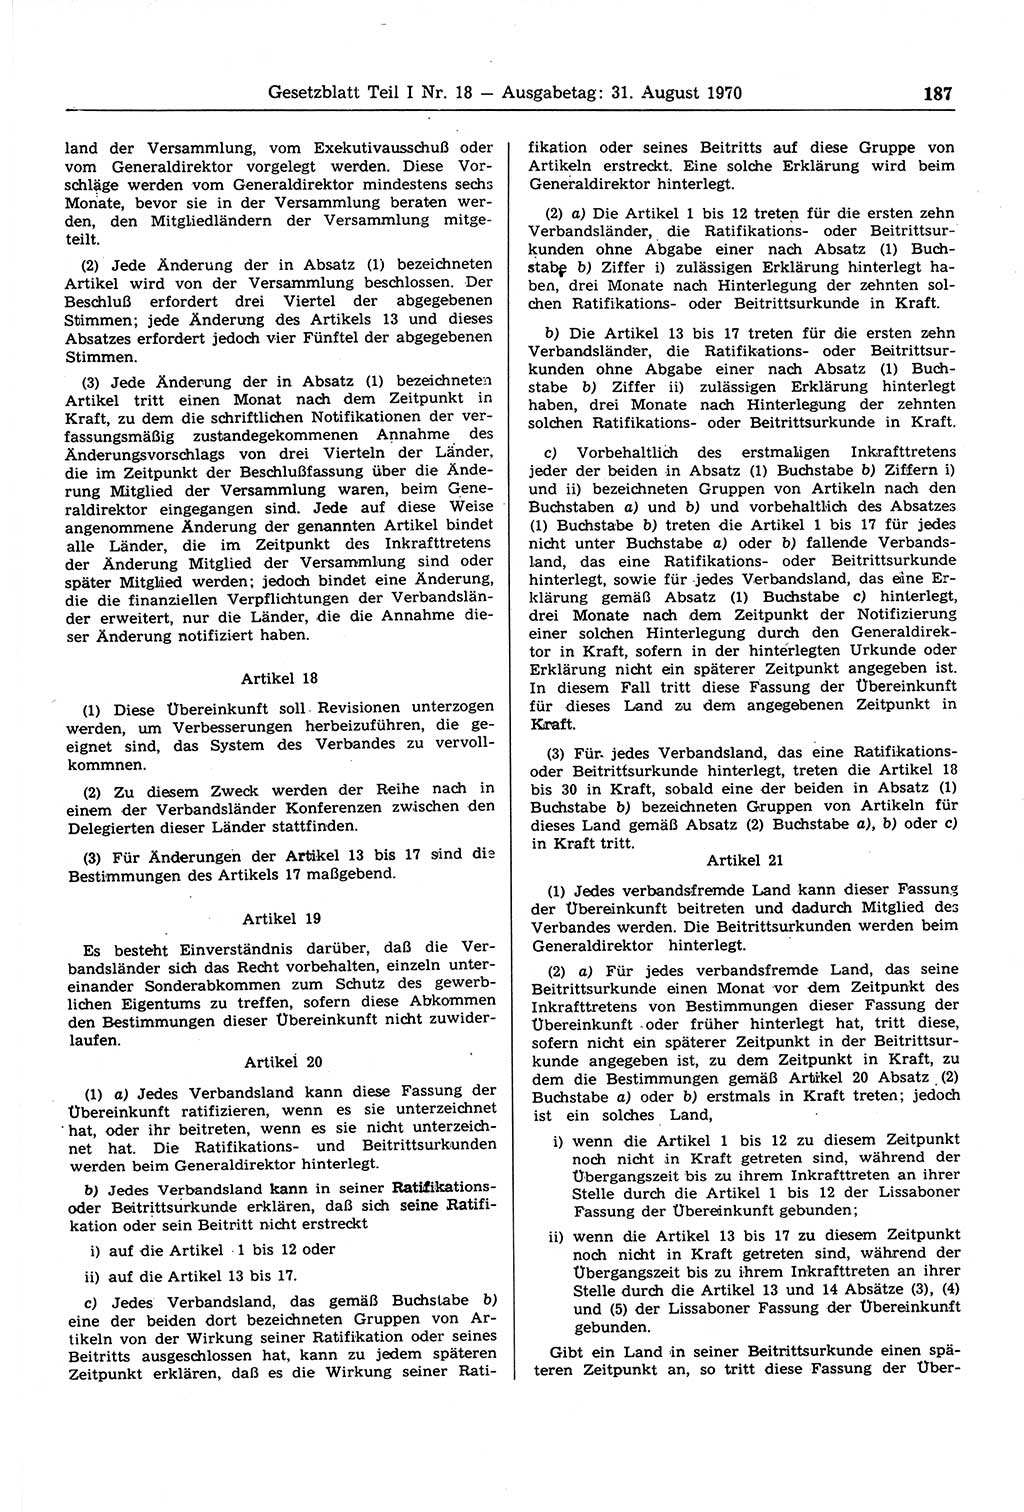 Gesetzblatt (GBl.) der Deutschen Demokratischen Republik (DDR) Teil Ⅰ 1970, Seite 187 (GBl. DDR Ⅰ 1970, S. 187)